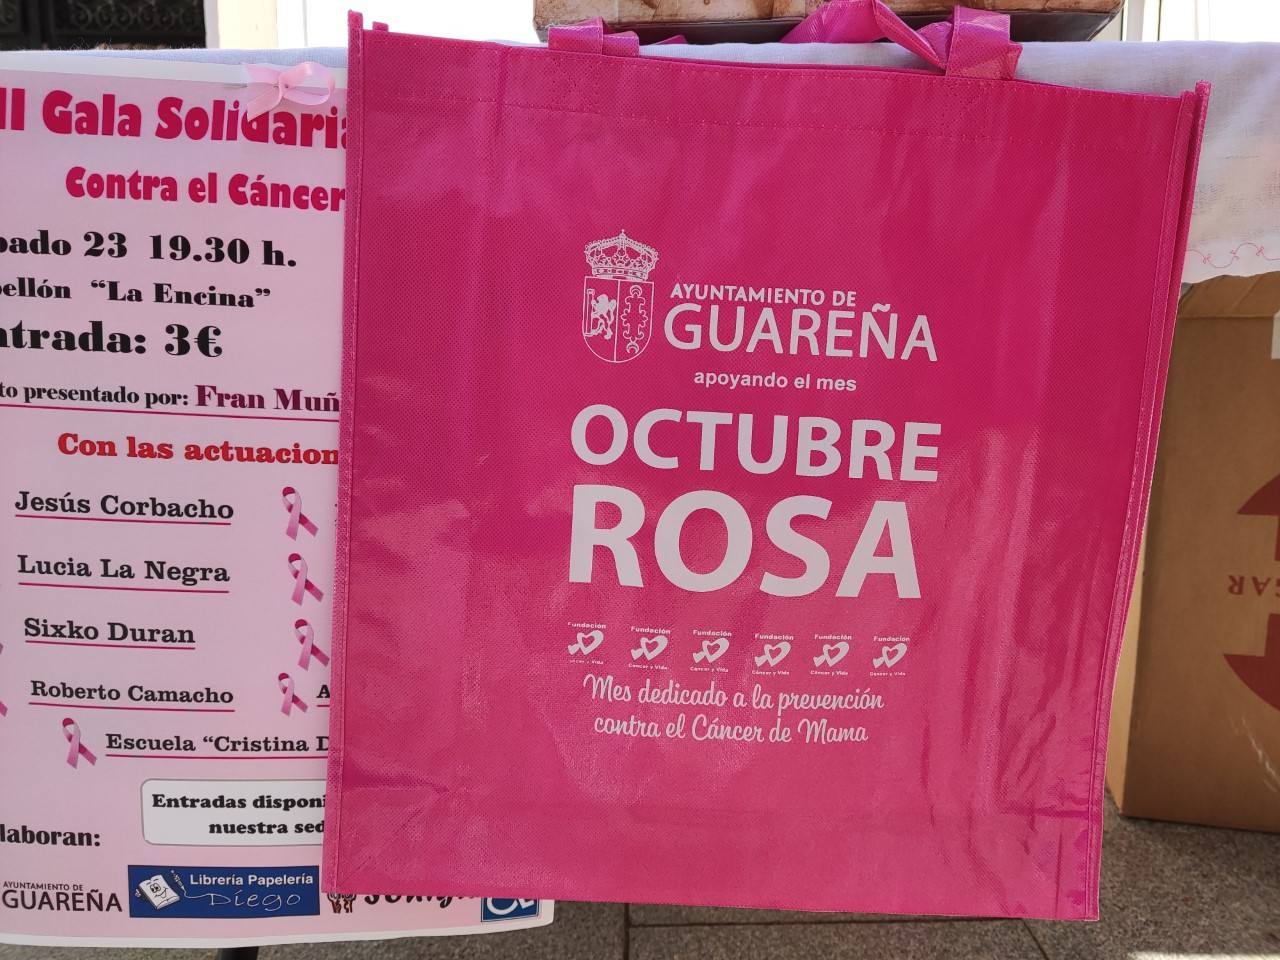 El ayuntamiento patrocina con mil bolsas rosas en apoyo a la lucha contra el cáncer de mama